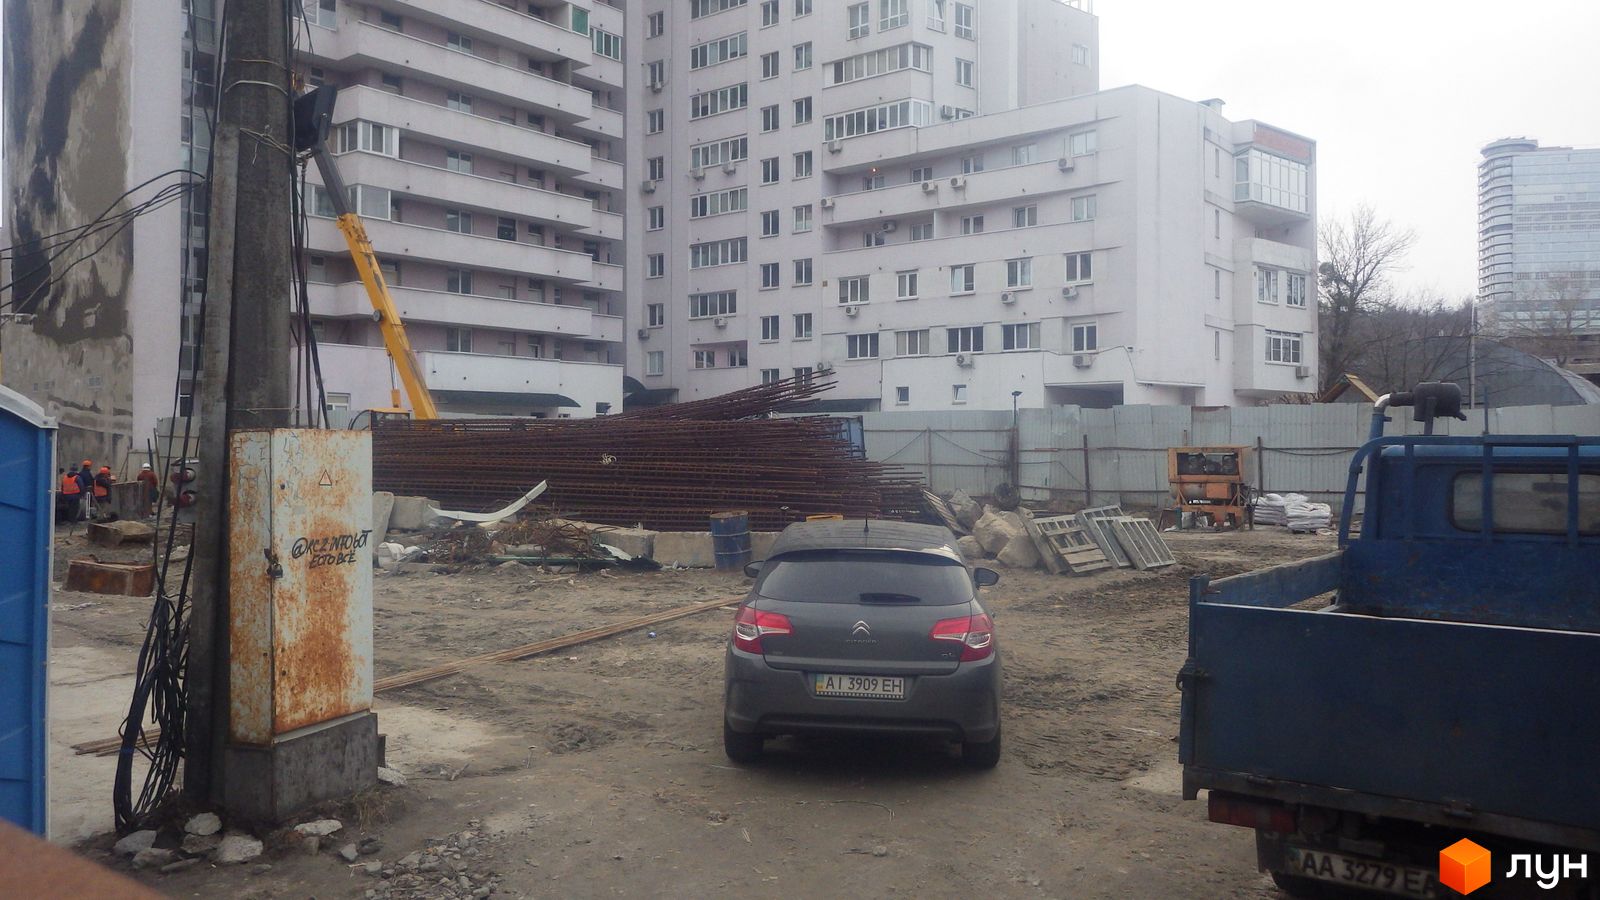 Ход строительства ул. Казимира Малевича, 44, 46, 0, февраль 2020